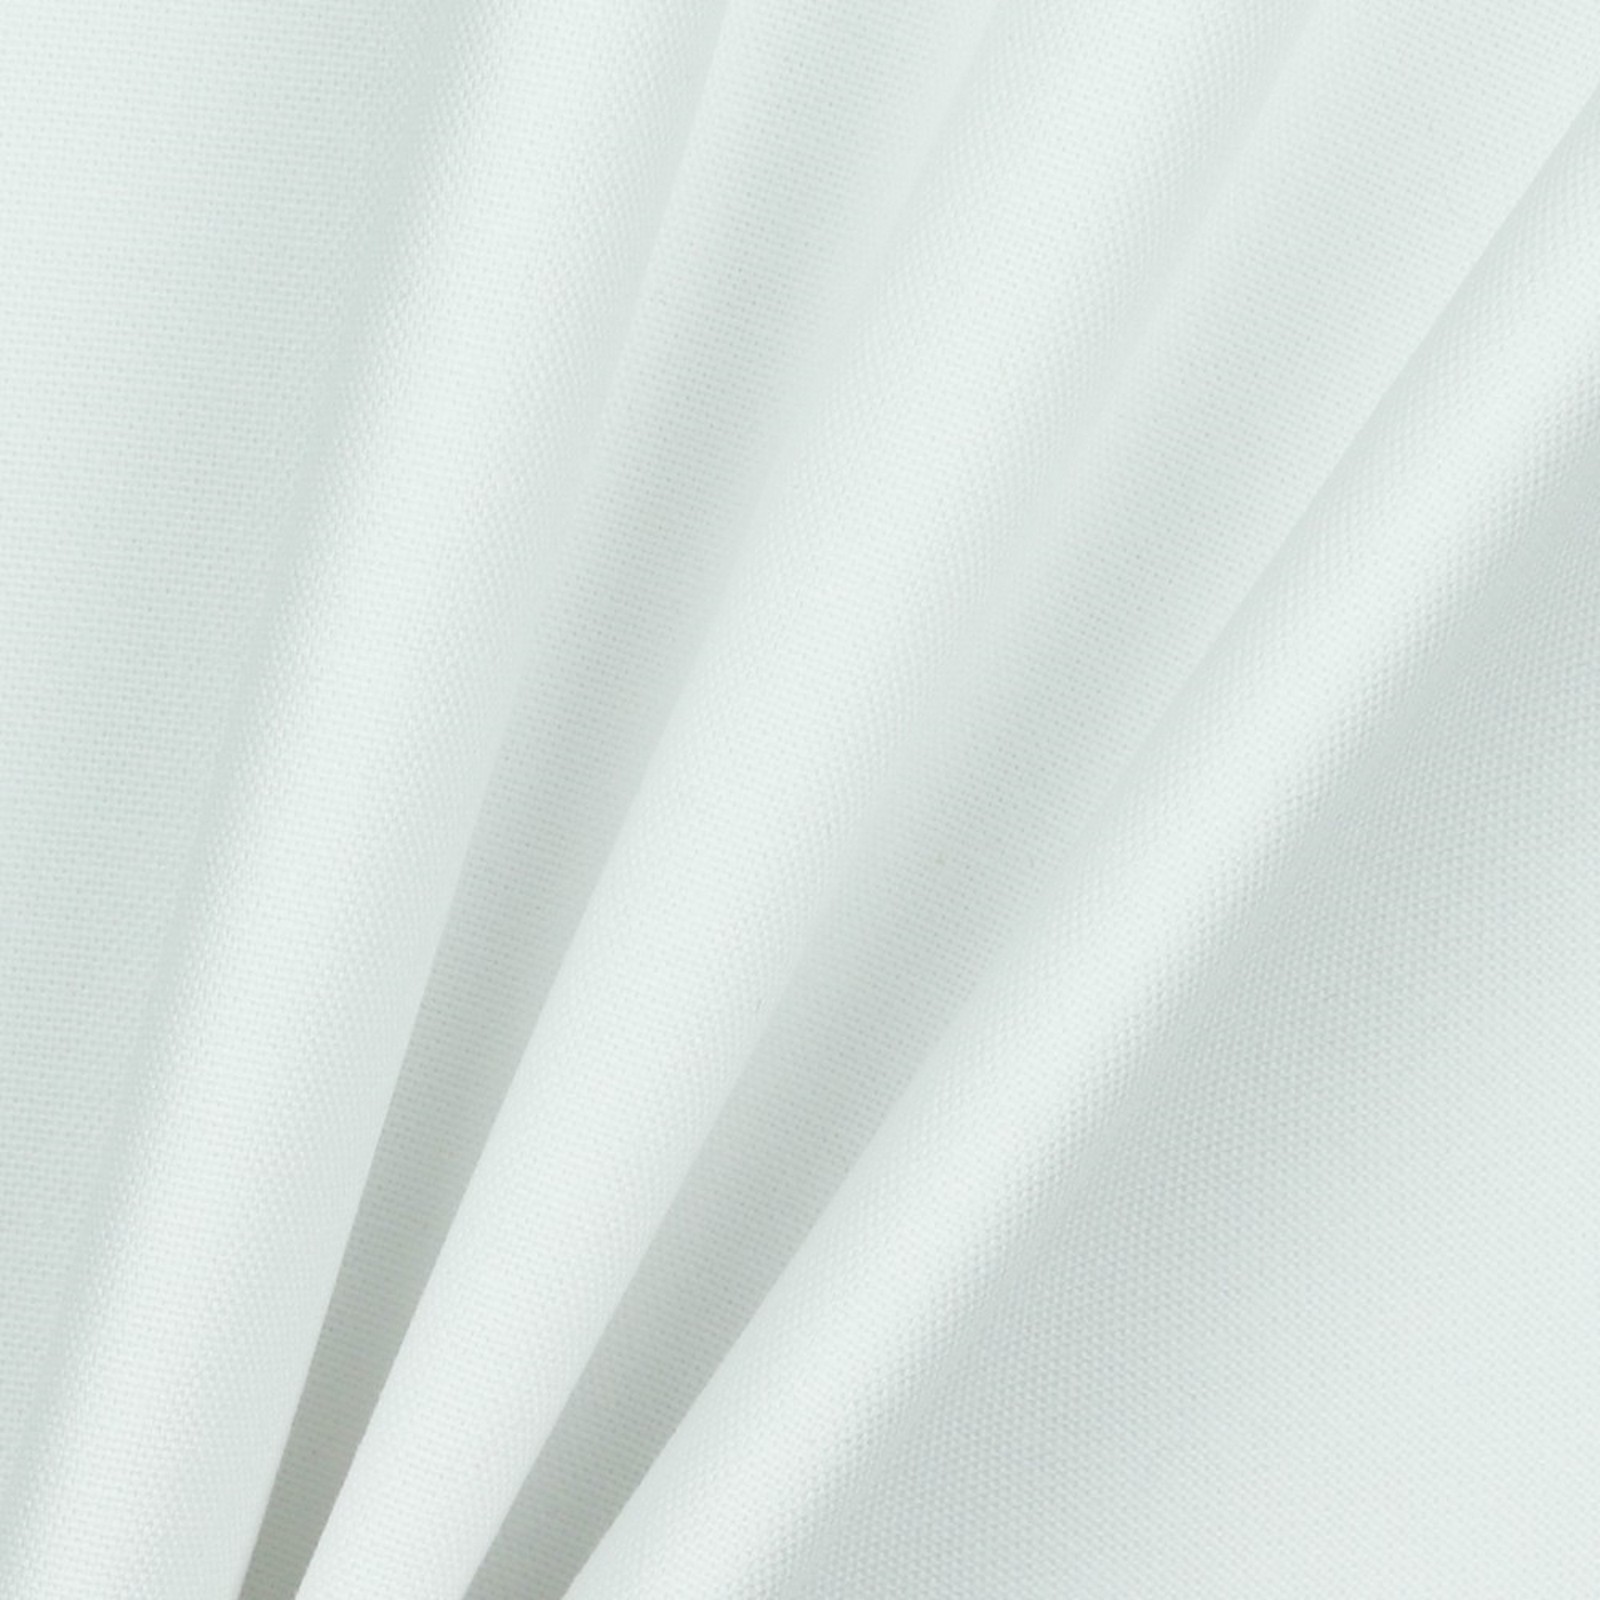 Stoff Meterware Teflon Beschichtet Weiß 140 cm